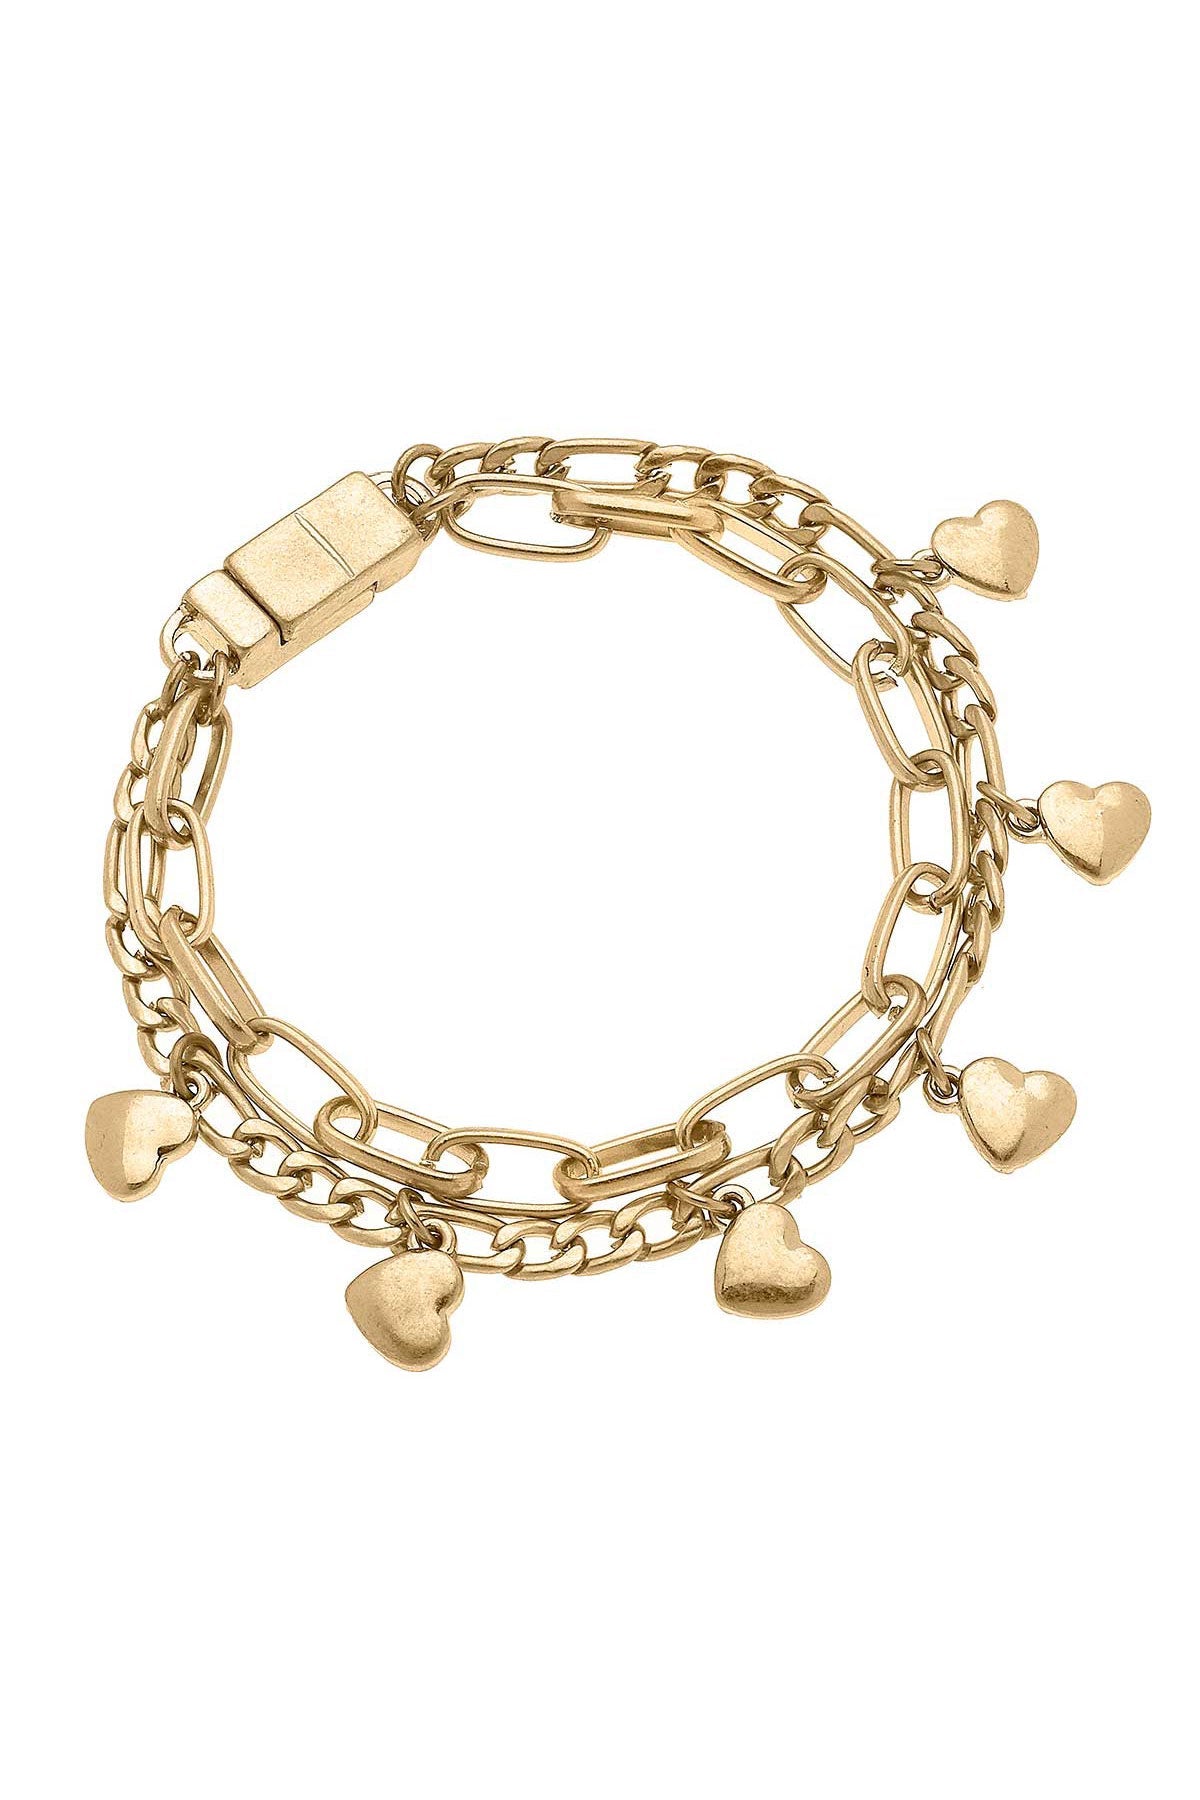 Wilder Heart Layered Chain Link Bracelet in Worn Gold